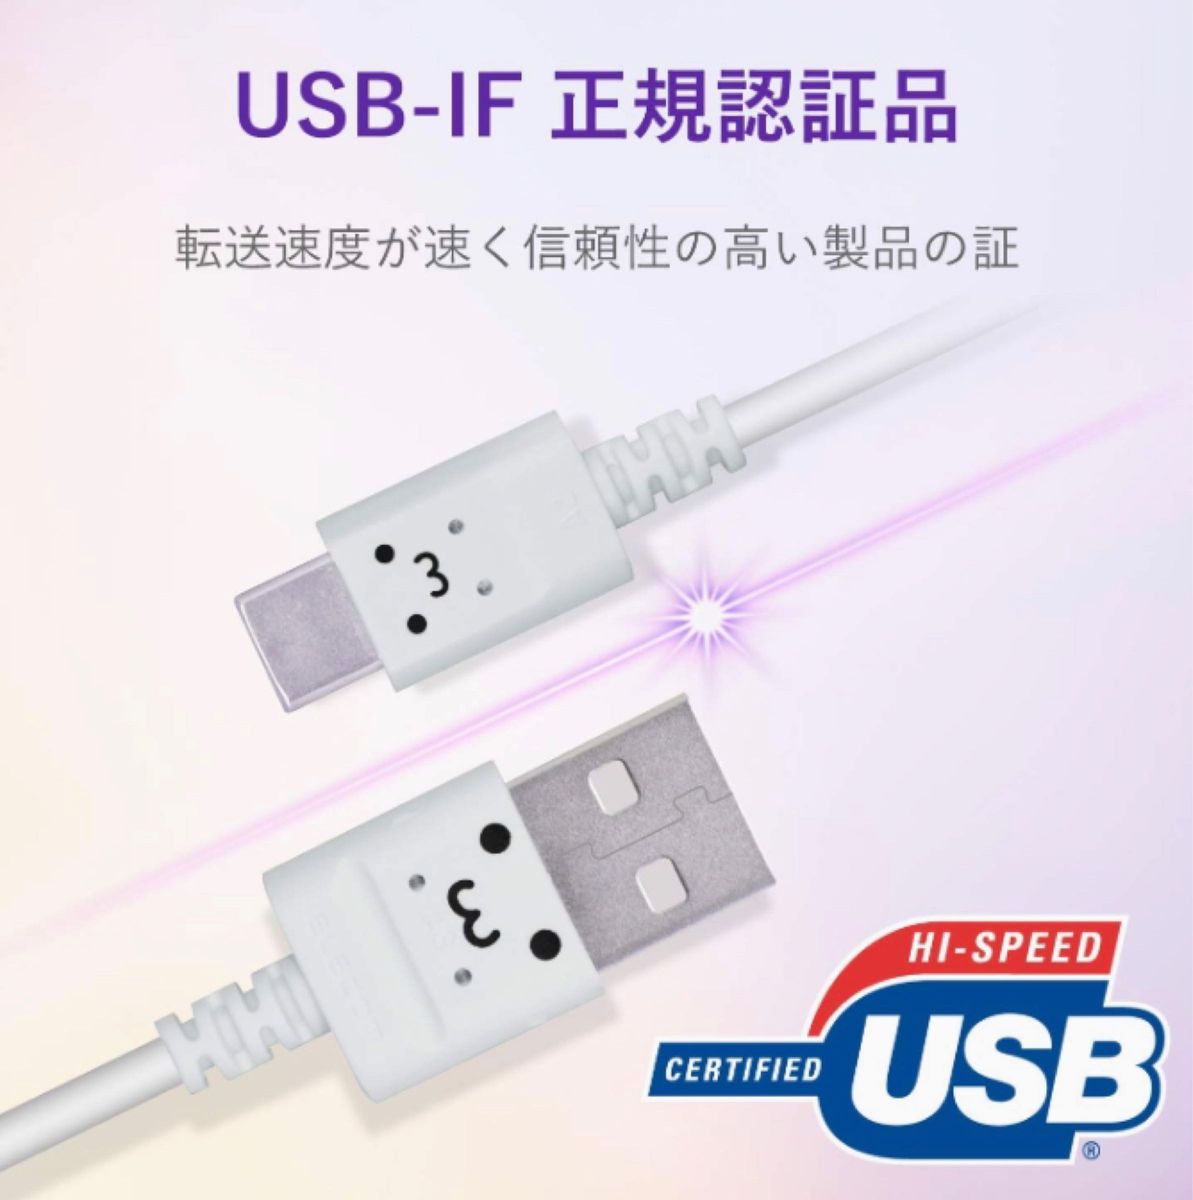 新品 1.2m スマホ pc ケーブル USB-A USB-C 充電 データ転送 ホワイトフェイス エレコム